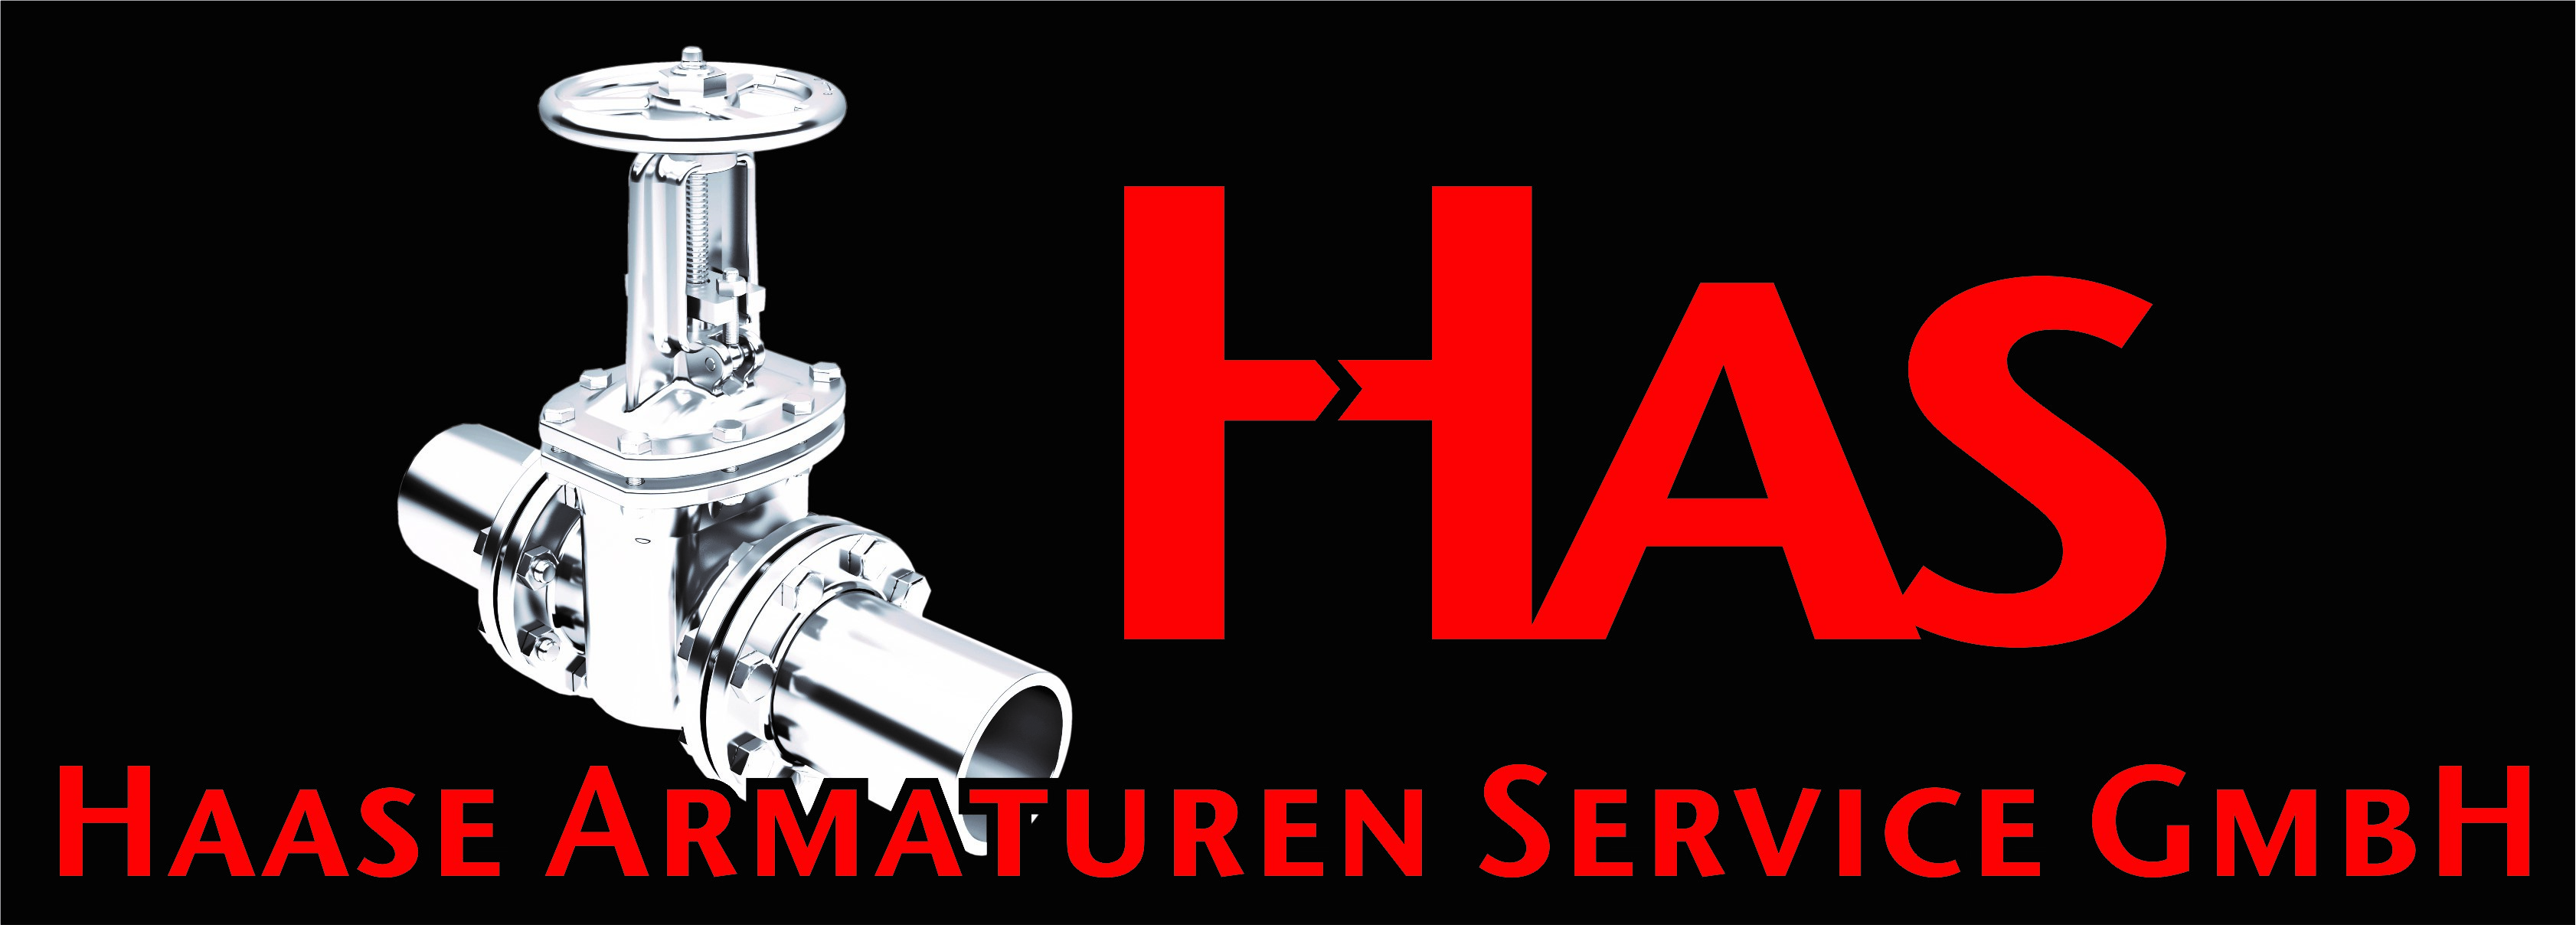 Fünfjähriges Bestehen von HAS - Haase Armaturen Service GmbH